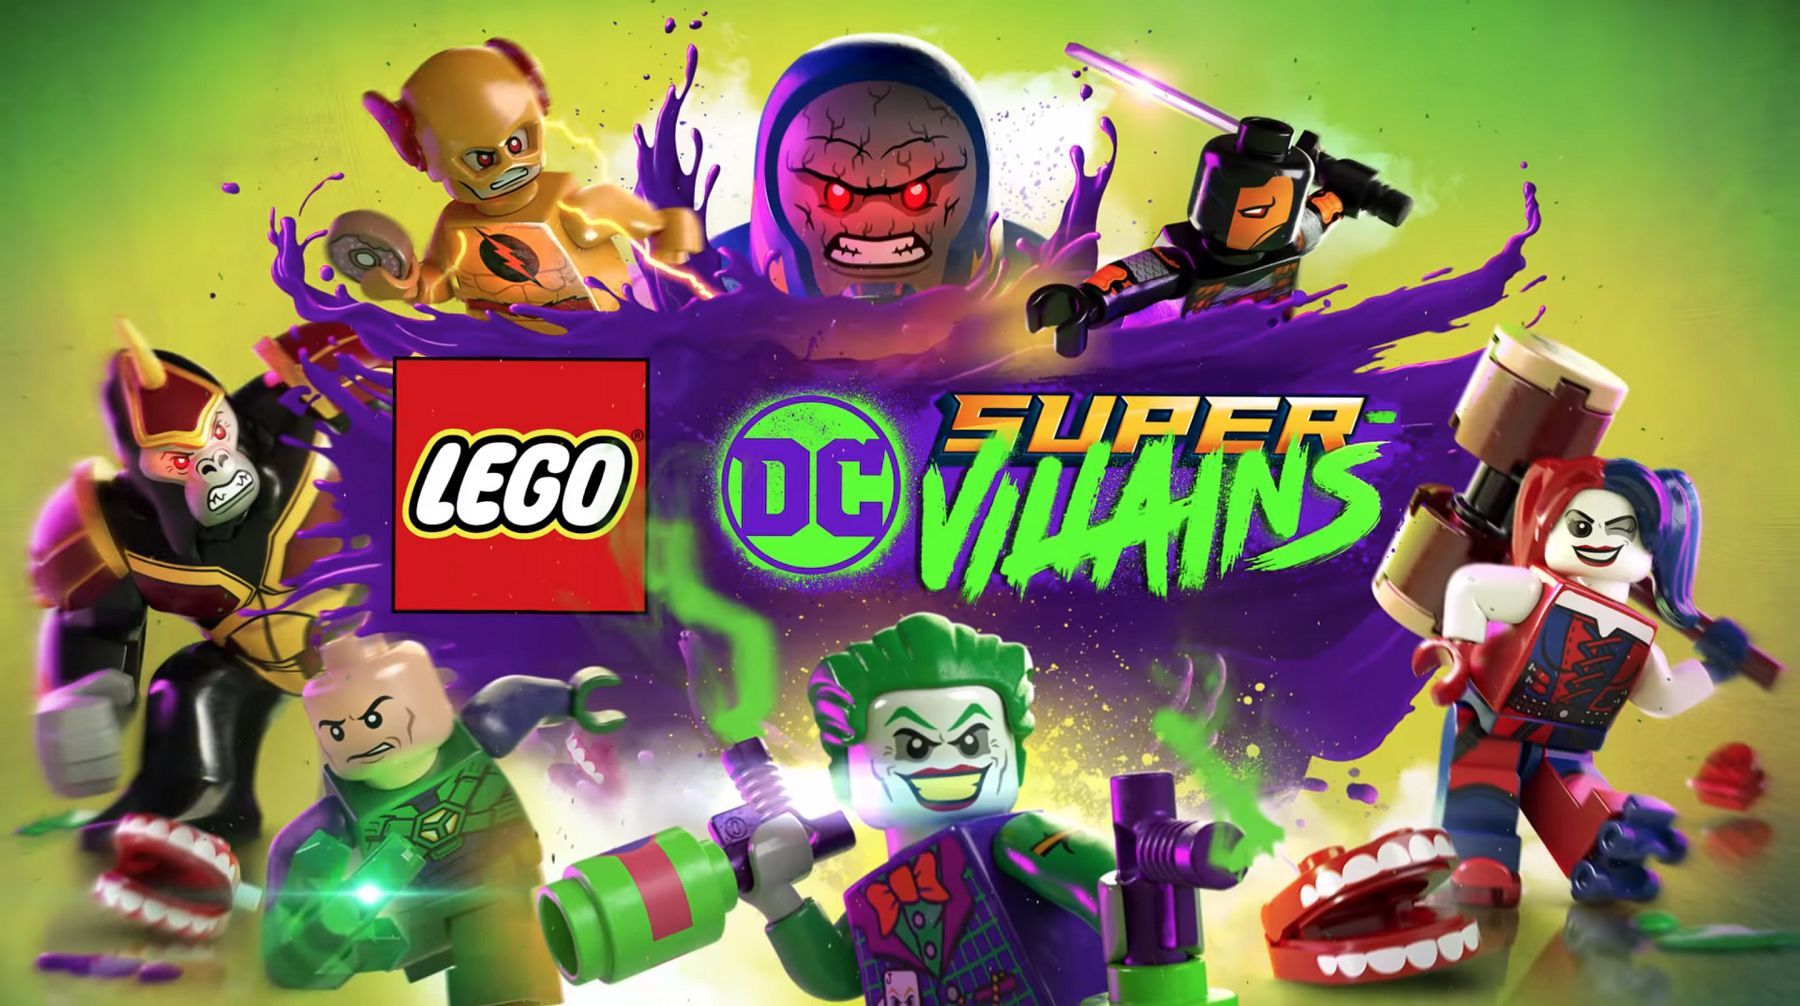 Lego DC Super Villains Image